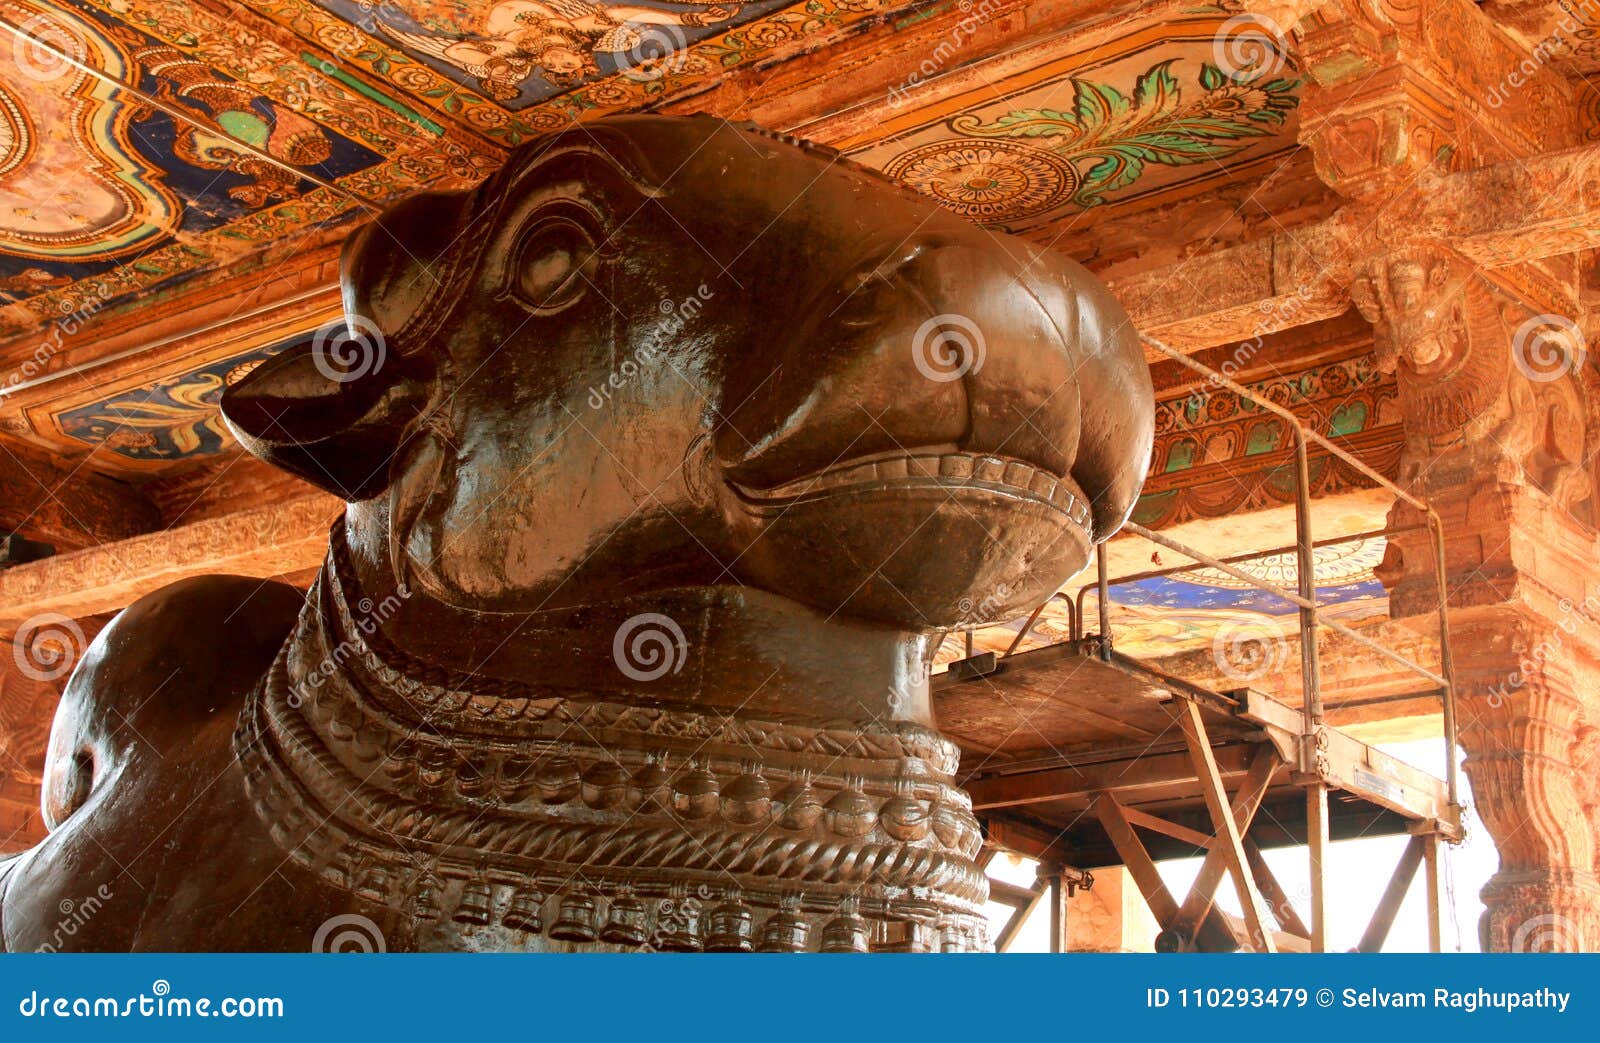 The Great Bull -nandhi- Statue of the Ancient Brihadisvara Temple ...